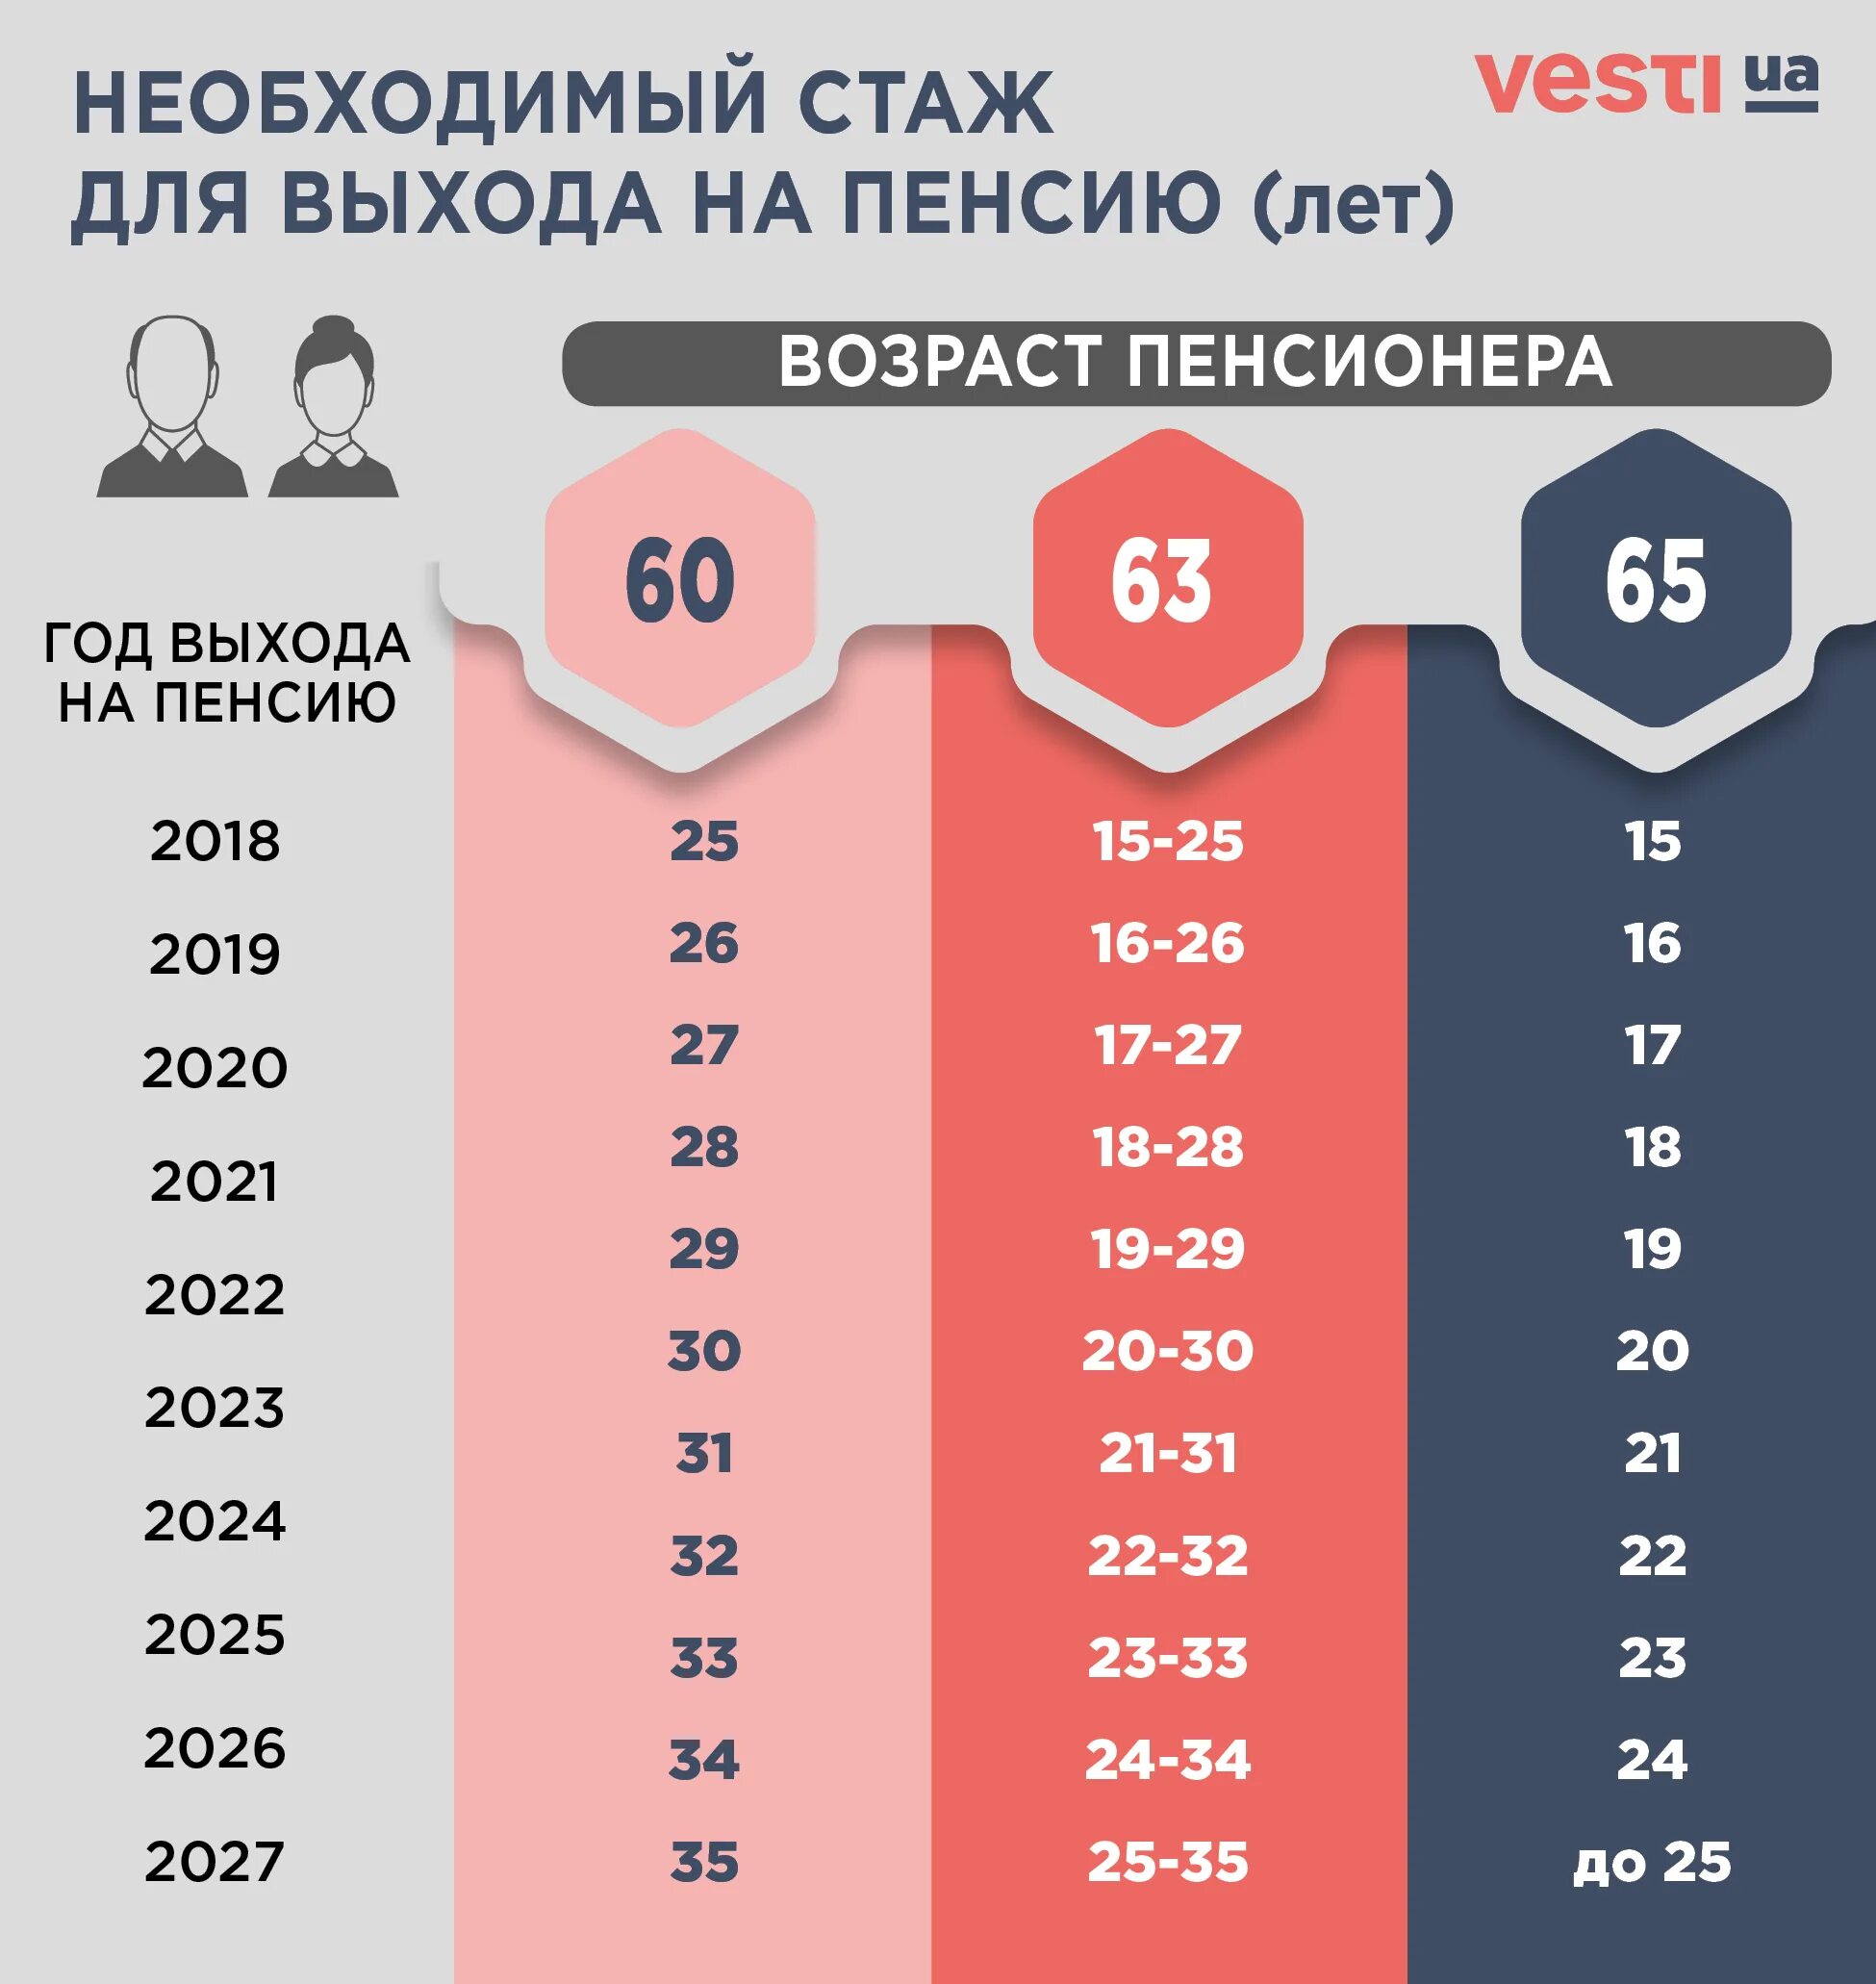 Трудовые пенсии в белоруссии в 2024 году. Минимальный стаж доятпенсии. Минимальный стаж для пенсии. Сьаж для вызодв на пен см ию. Минимальный стаж для выхода на пенсию для женщин.